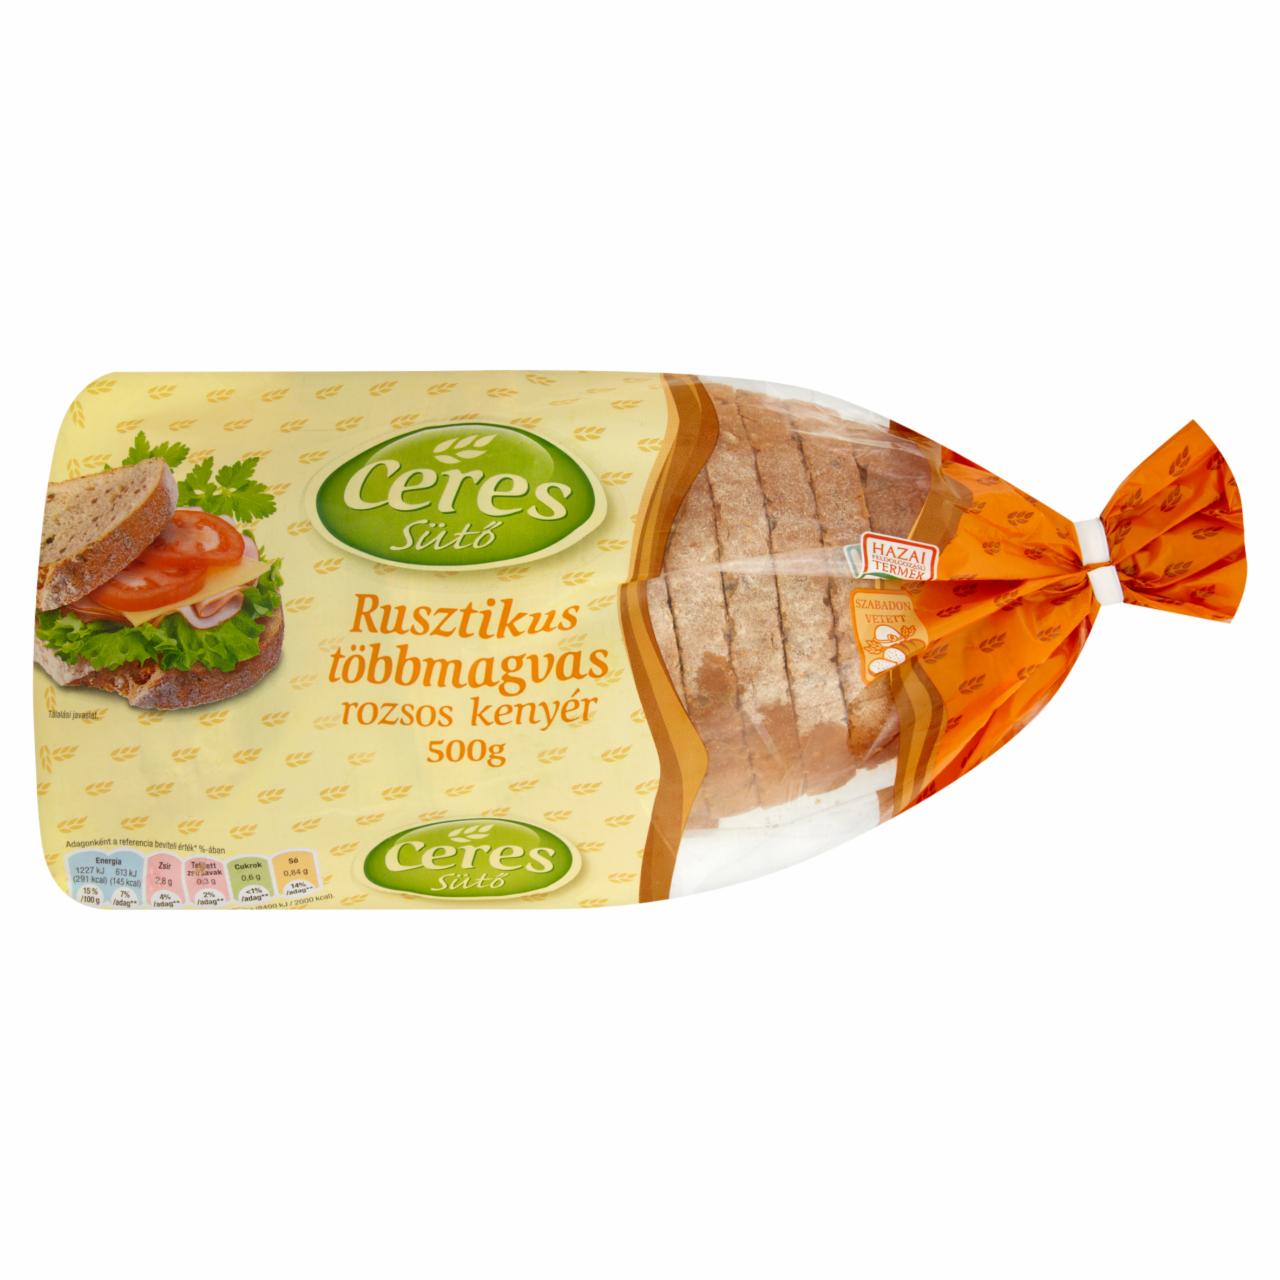 Képek - Ceres Sütő rusztikus többmagvas rozsos kenyér 500 g